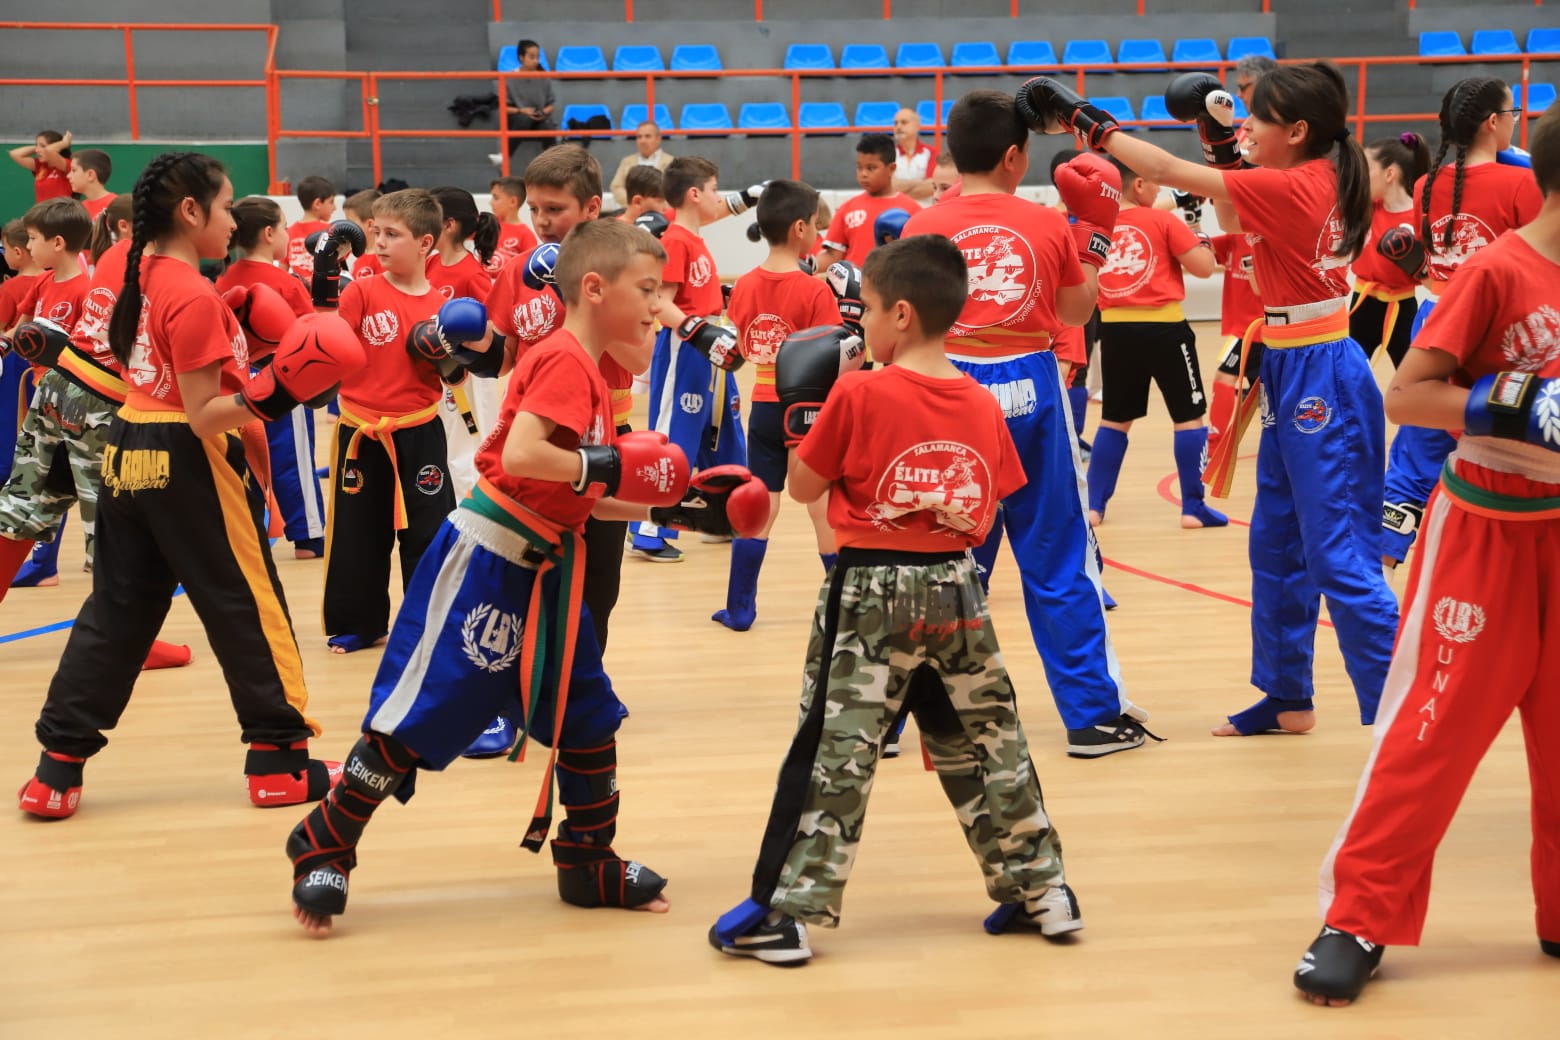 Graduación del Kickboxing salmantino. 150 jóvenes deportistas han participado de este deporte.